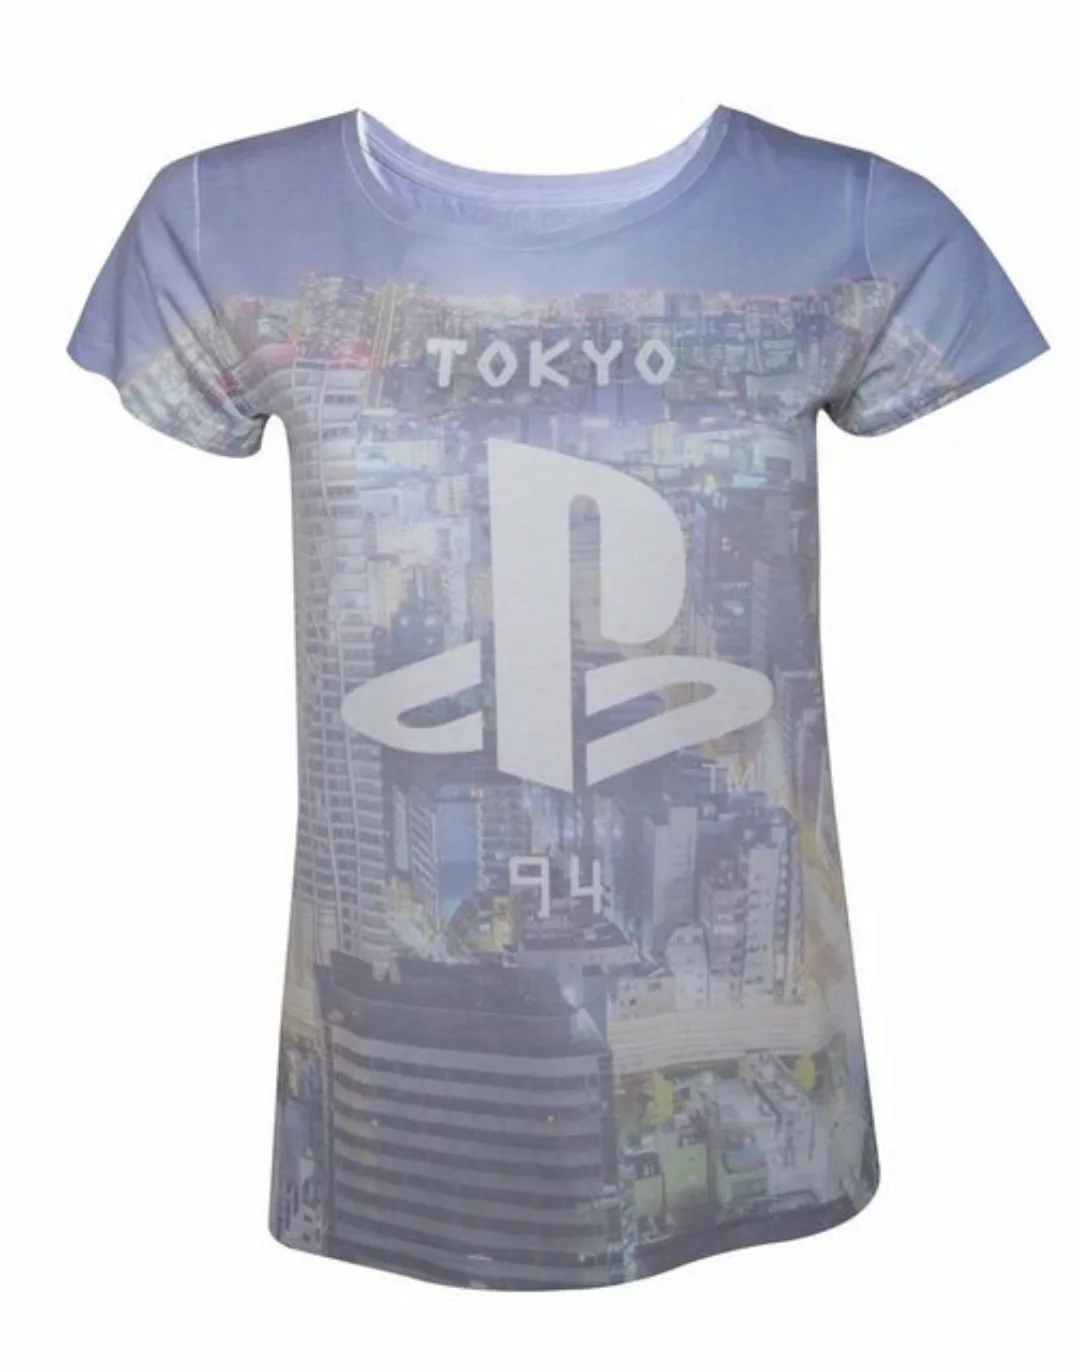 Playstation T-Shirt günstig online kaufen